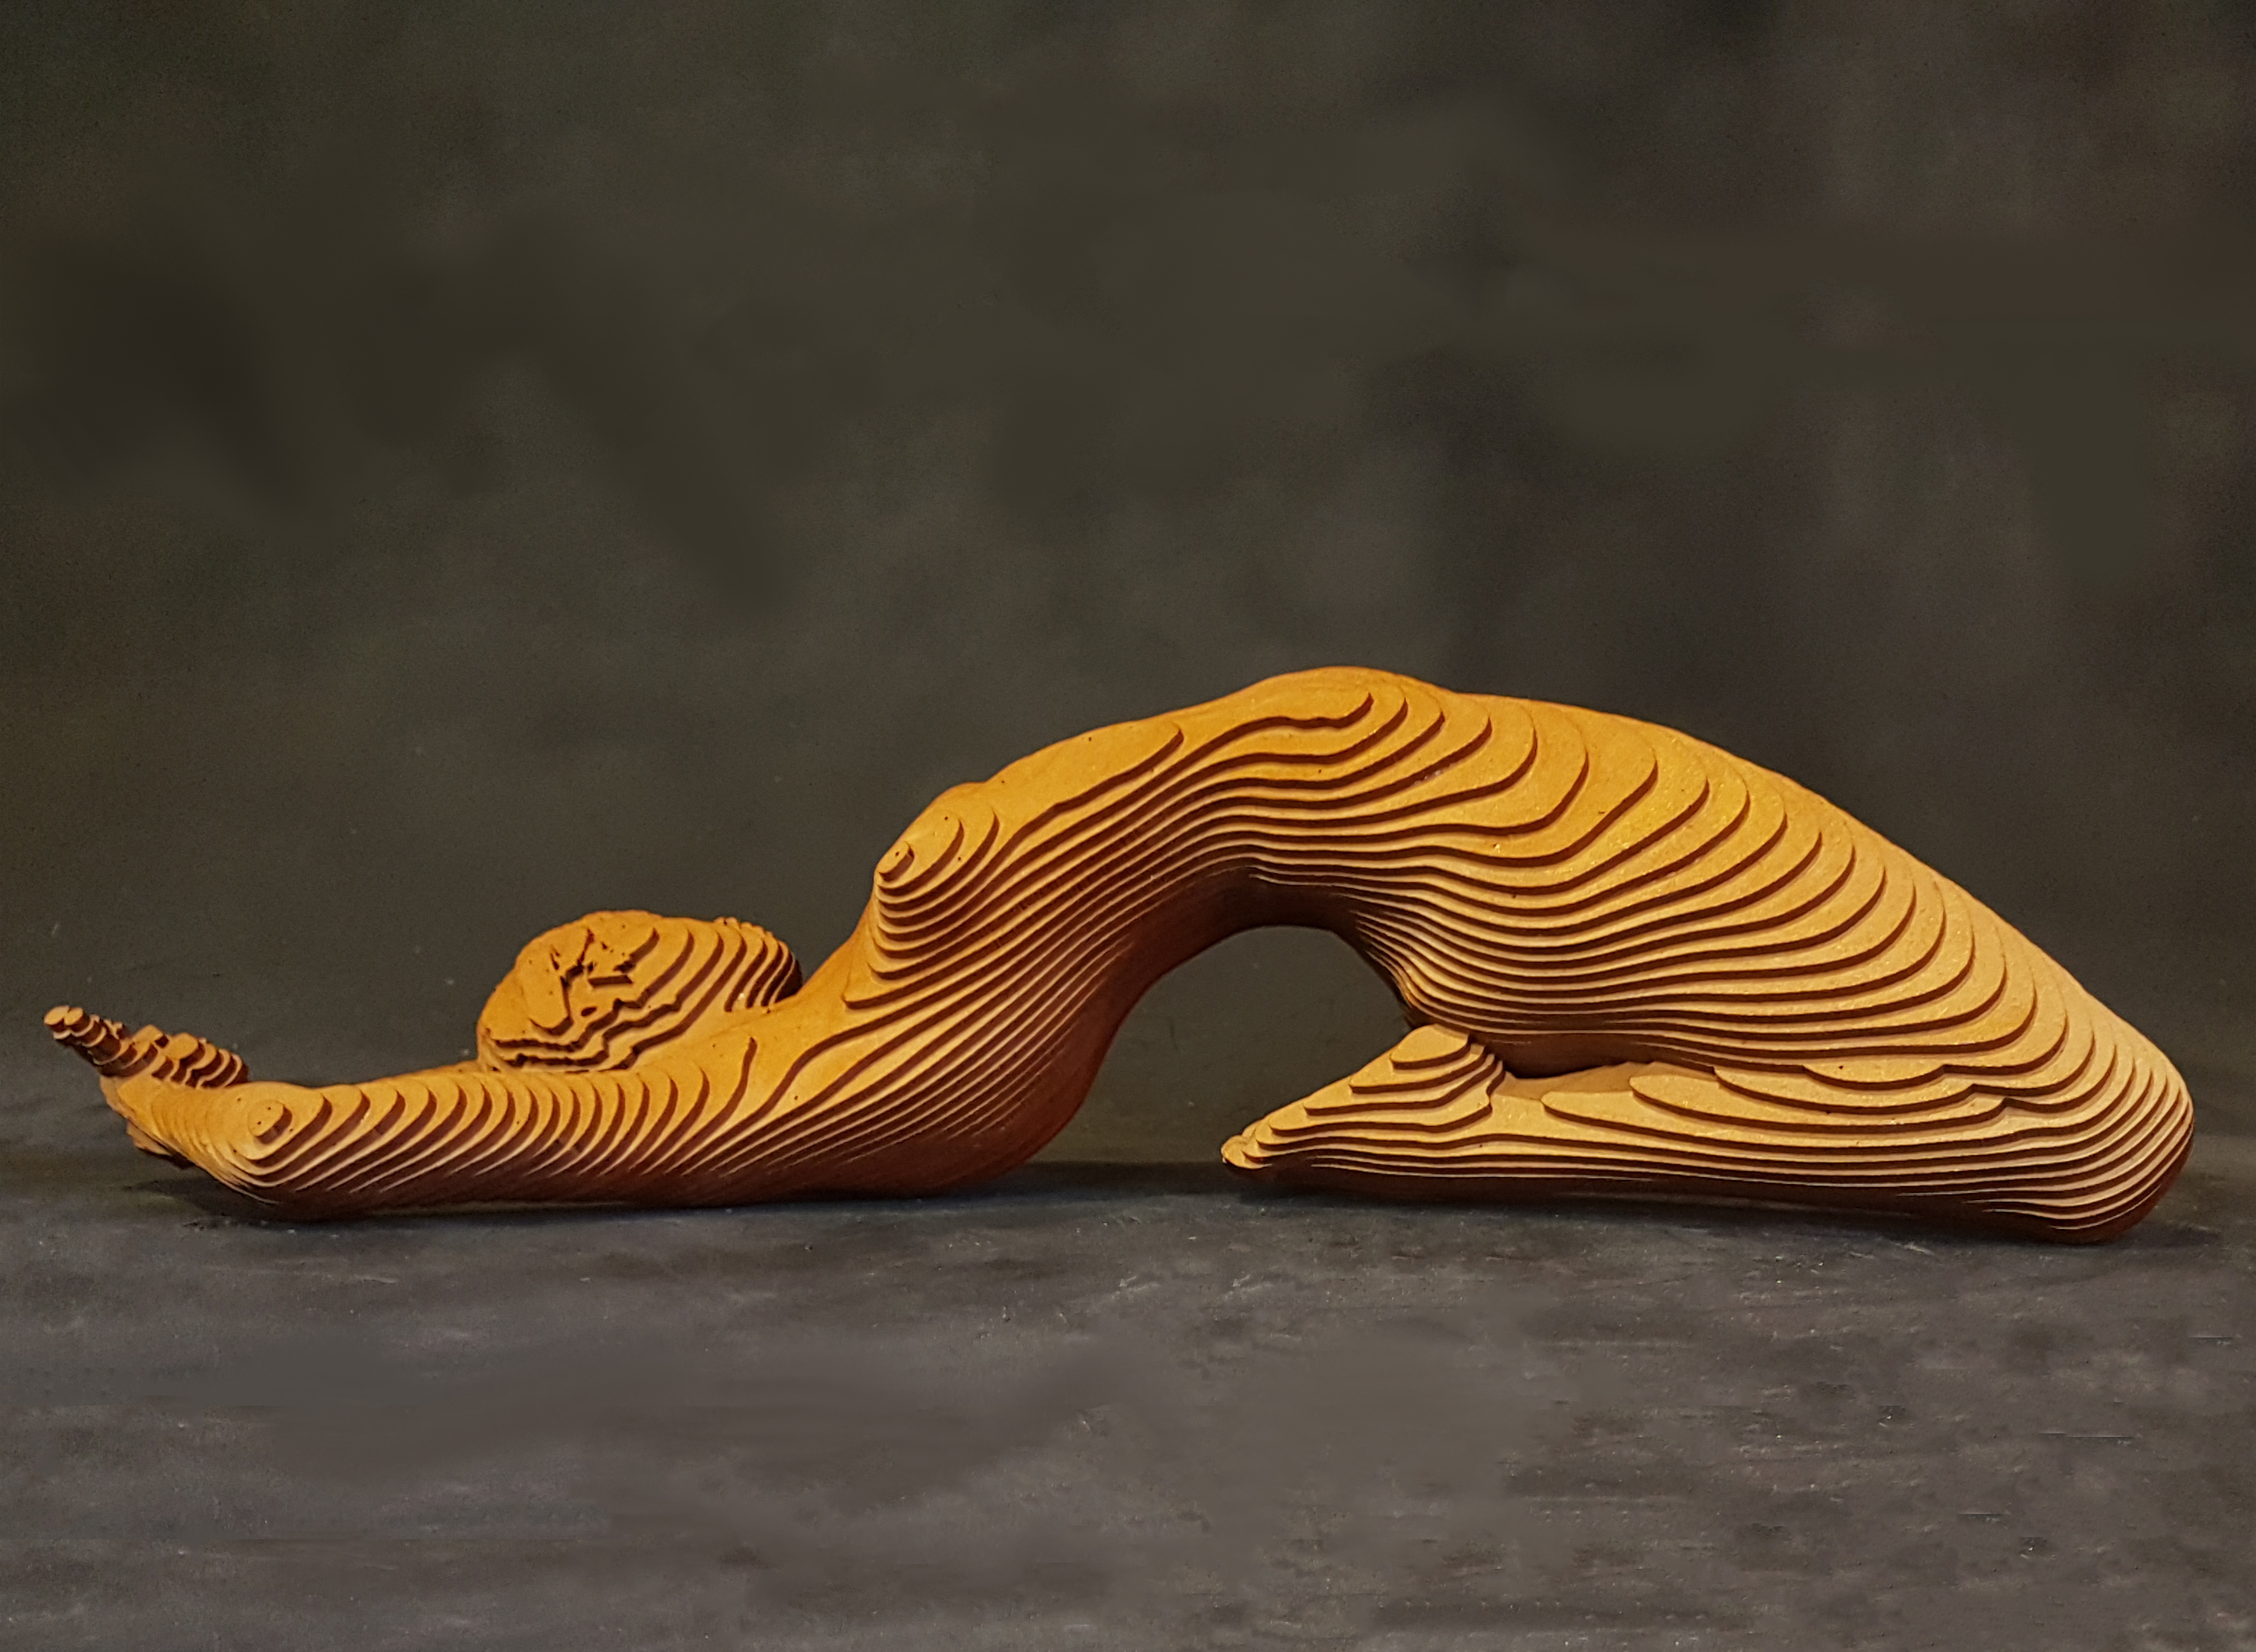 Olivier Duhamel - Nissan 2018, Sculpture en bois 50 x 24 x 12 cm | 19 7/10 × 9 2/5 × 4 7/10 in Édition de 8 © Marciano Contemporary